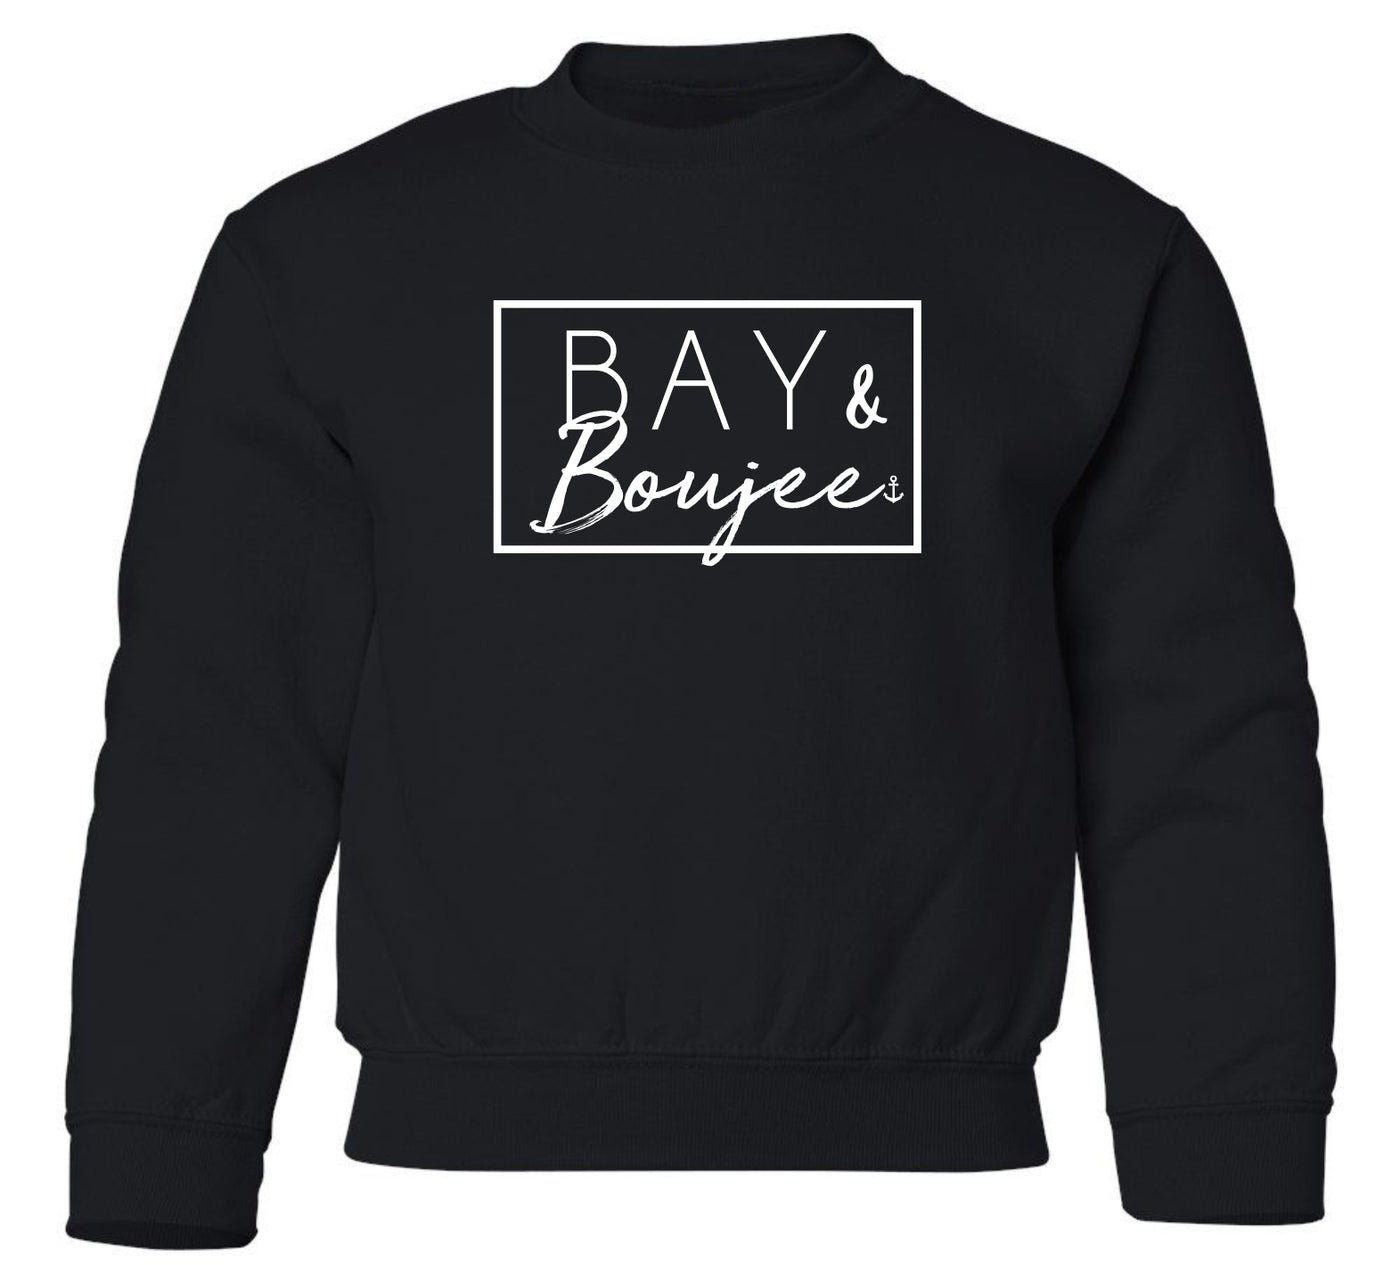 "Bay & Boujee" Toddler/Youth Crewneck Sweatshirt